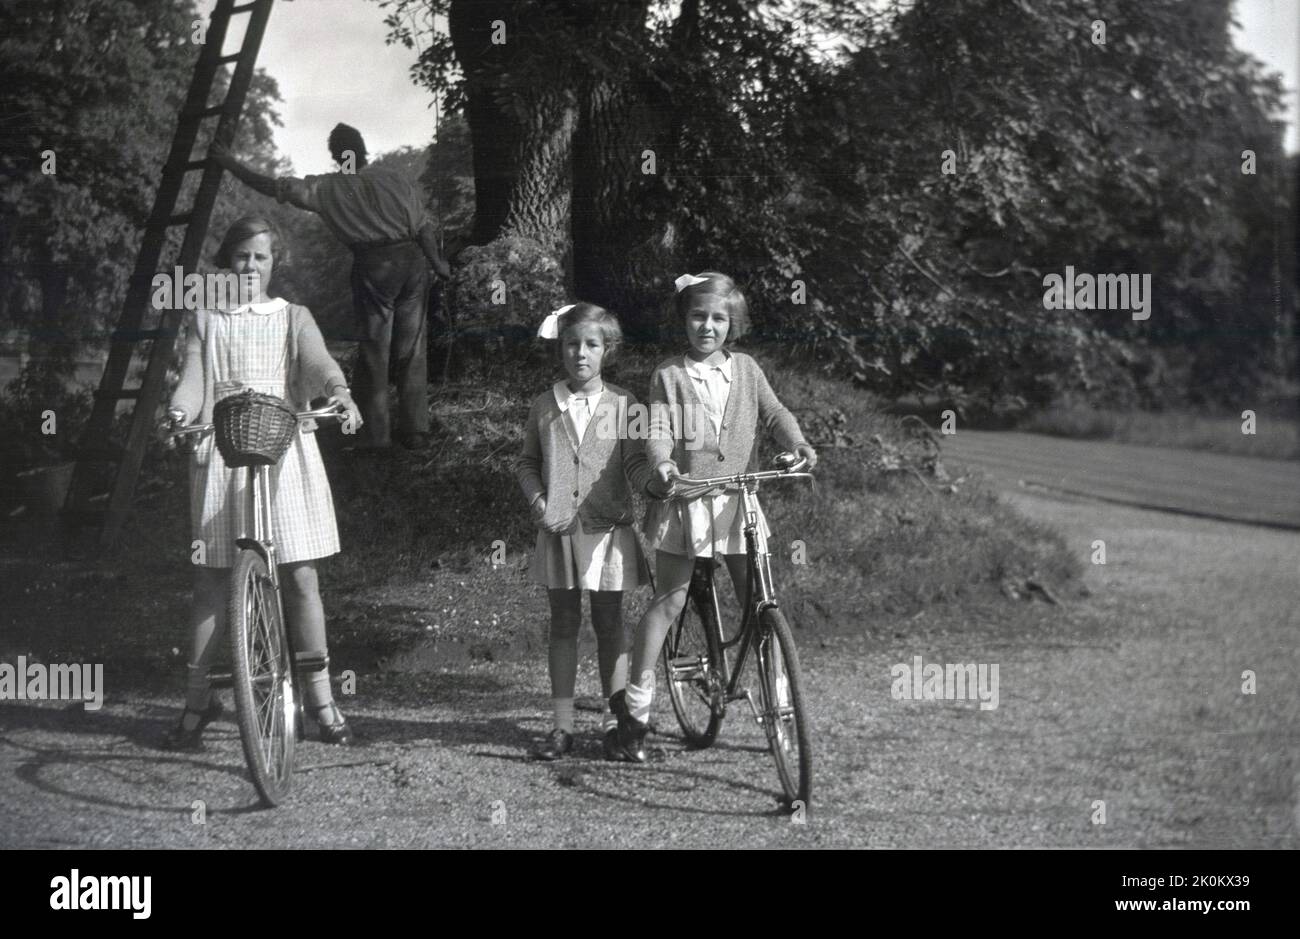 1937, historisch, drei Schulmädchen, zwei auf Fahrrädern, auf einem Schotterweg auf dem Gelände des Landgutes Forcett Hall, North Yorkshire, England, Großbritannien. Im Hintergrund befindet sich ein Gutsgärtner mit einer Leiter bei einem Baum. Stockfoto